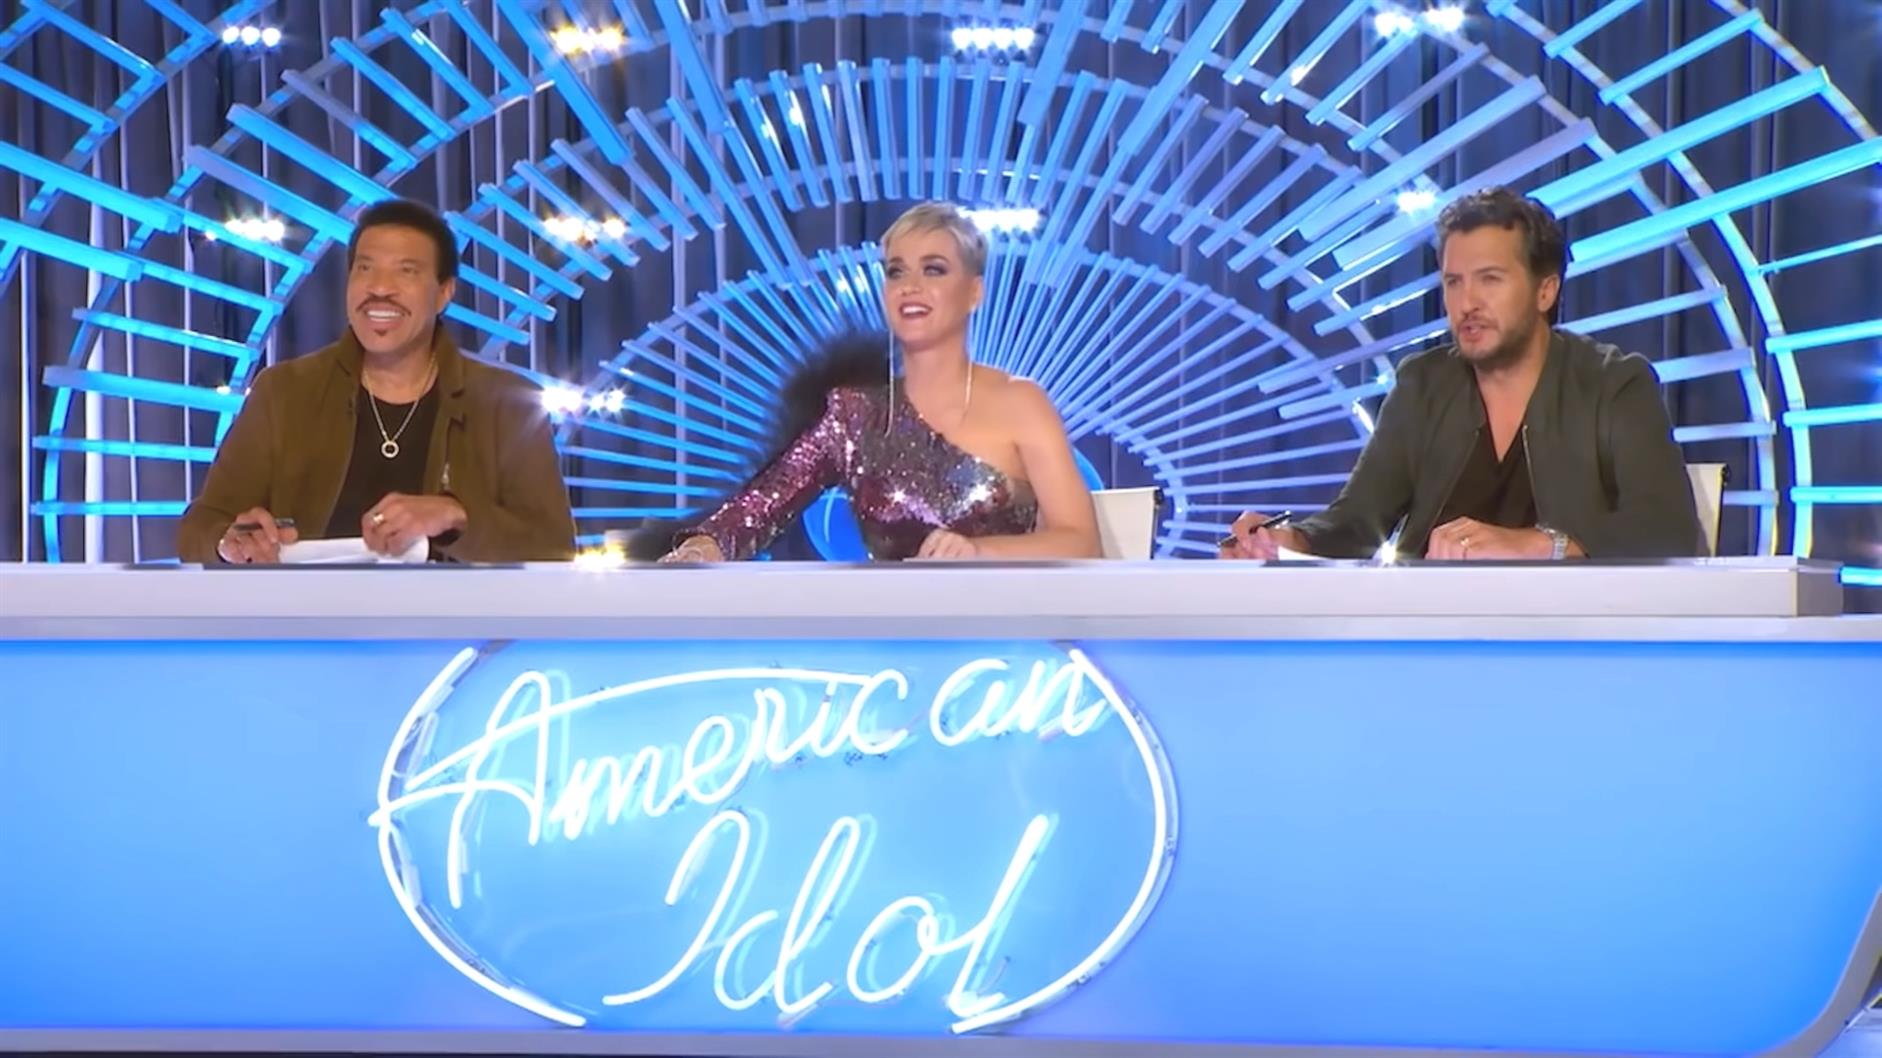 American Idol stagione 20 tutto quello che sappiamo r4Lbu3c0H 1 1